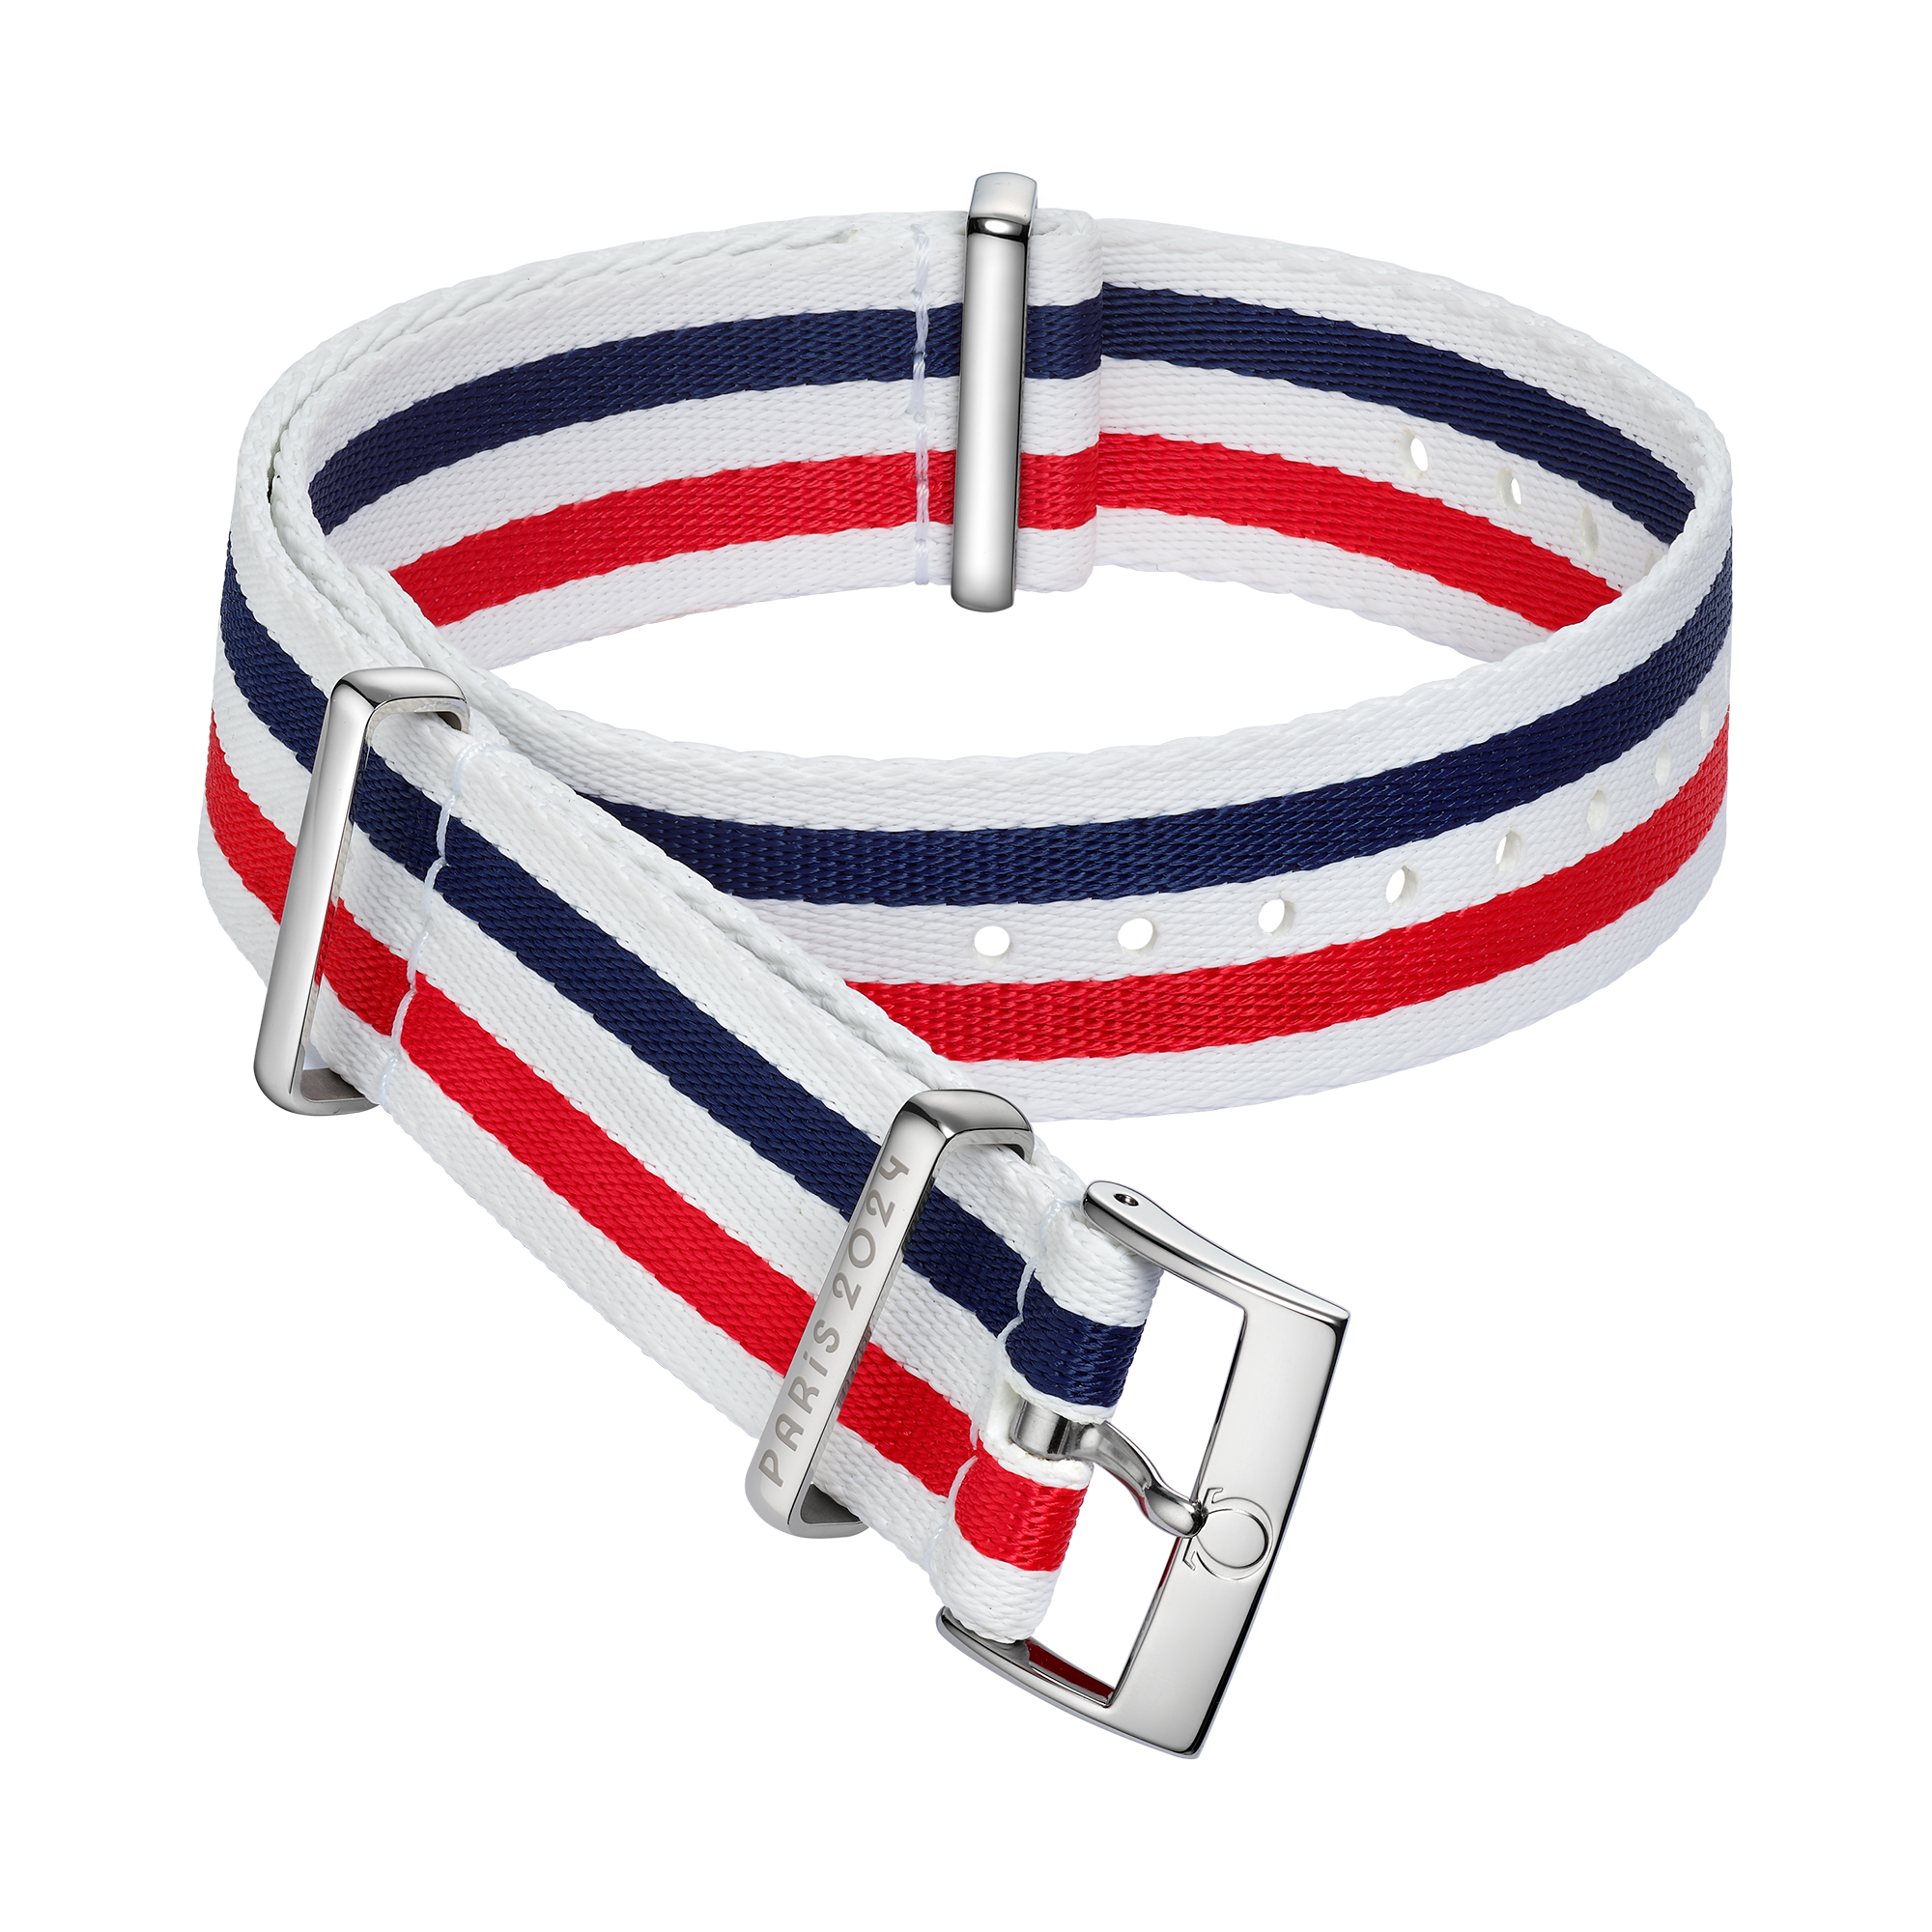 Bracelete NATO - Bracelete em poliamida branca, azul e vermelha com 5 faixas - 031Z019025